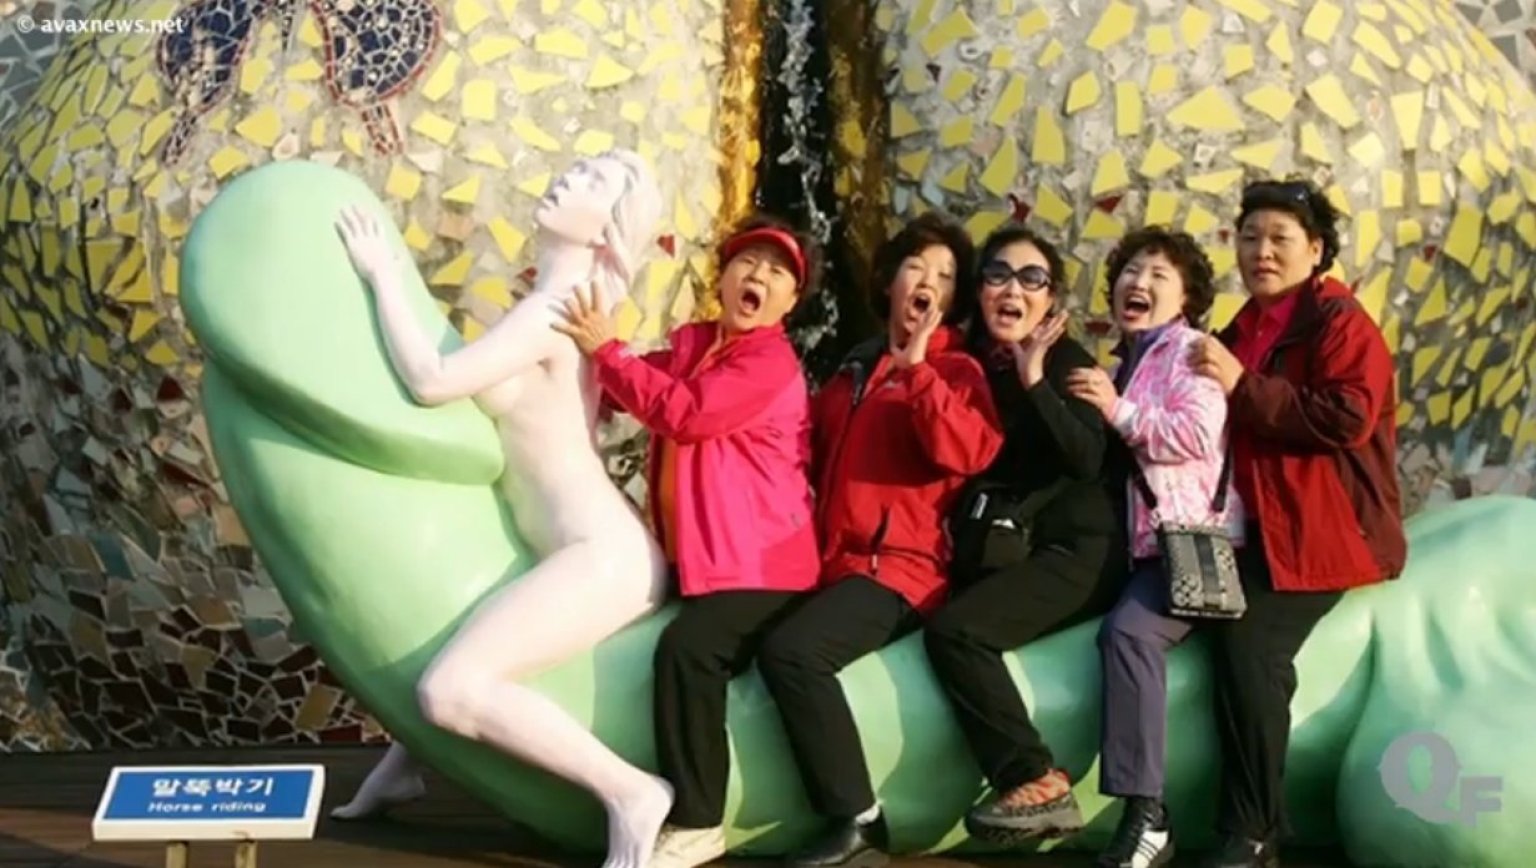 Jeju Loveland World S Kinkiest Theme Park Nsfw Photos Huffpost